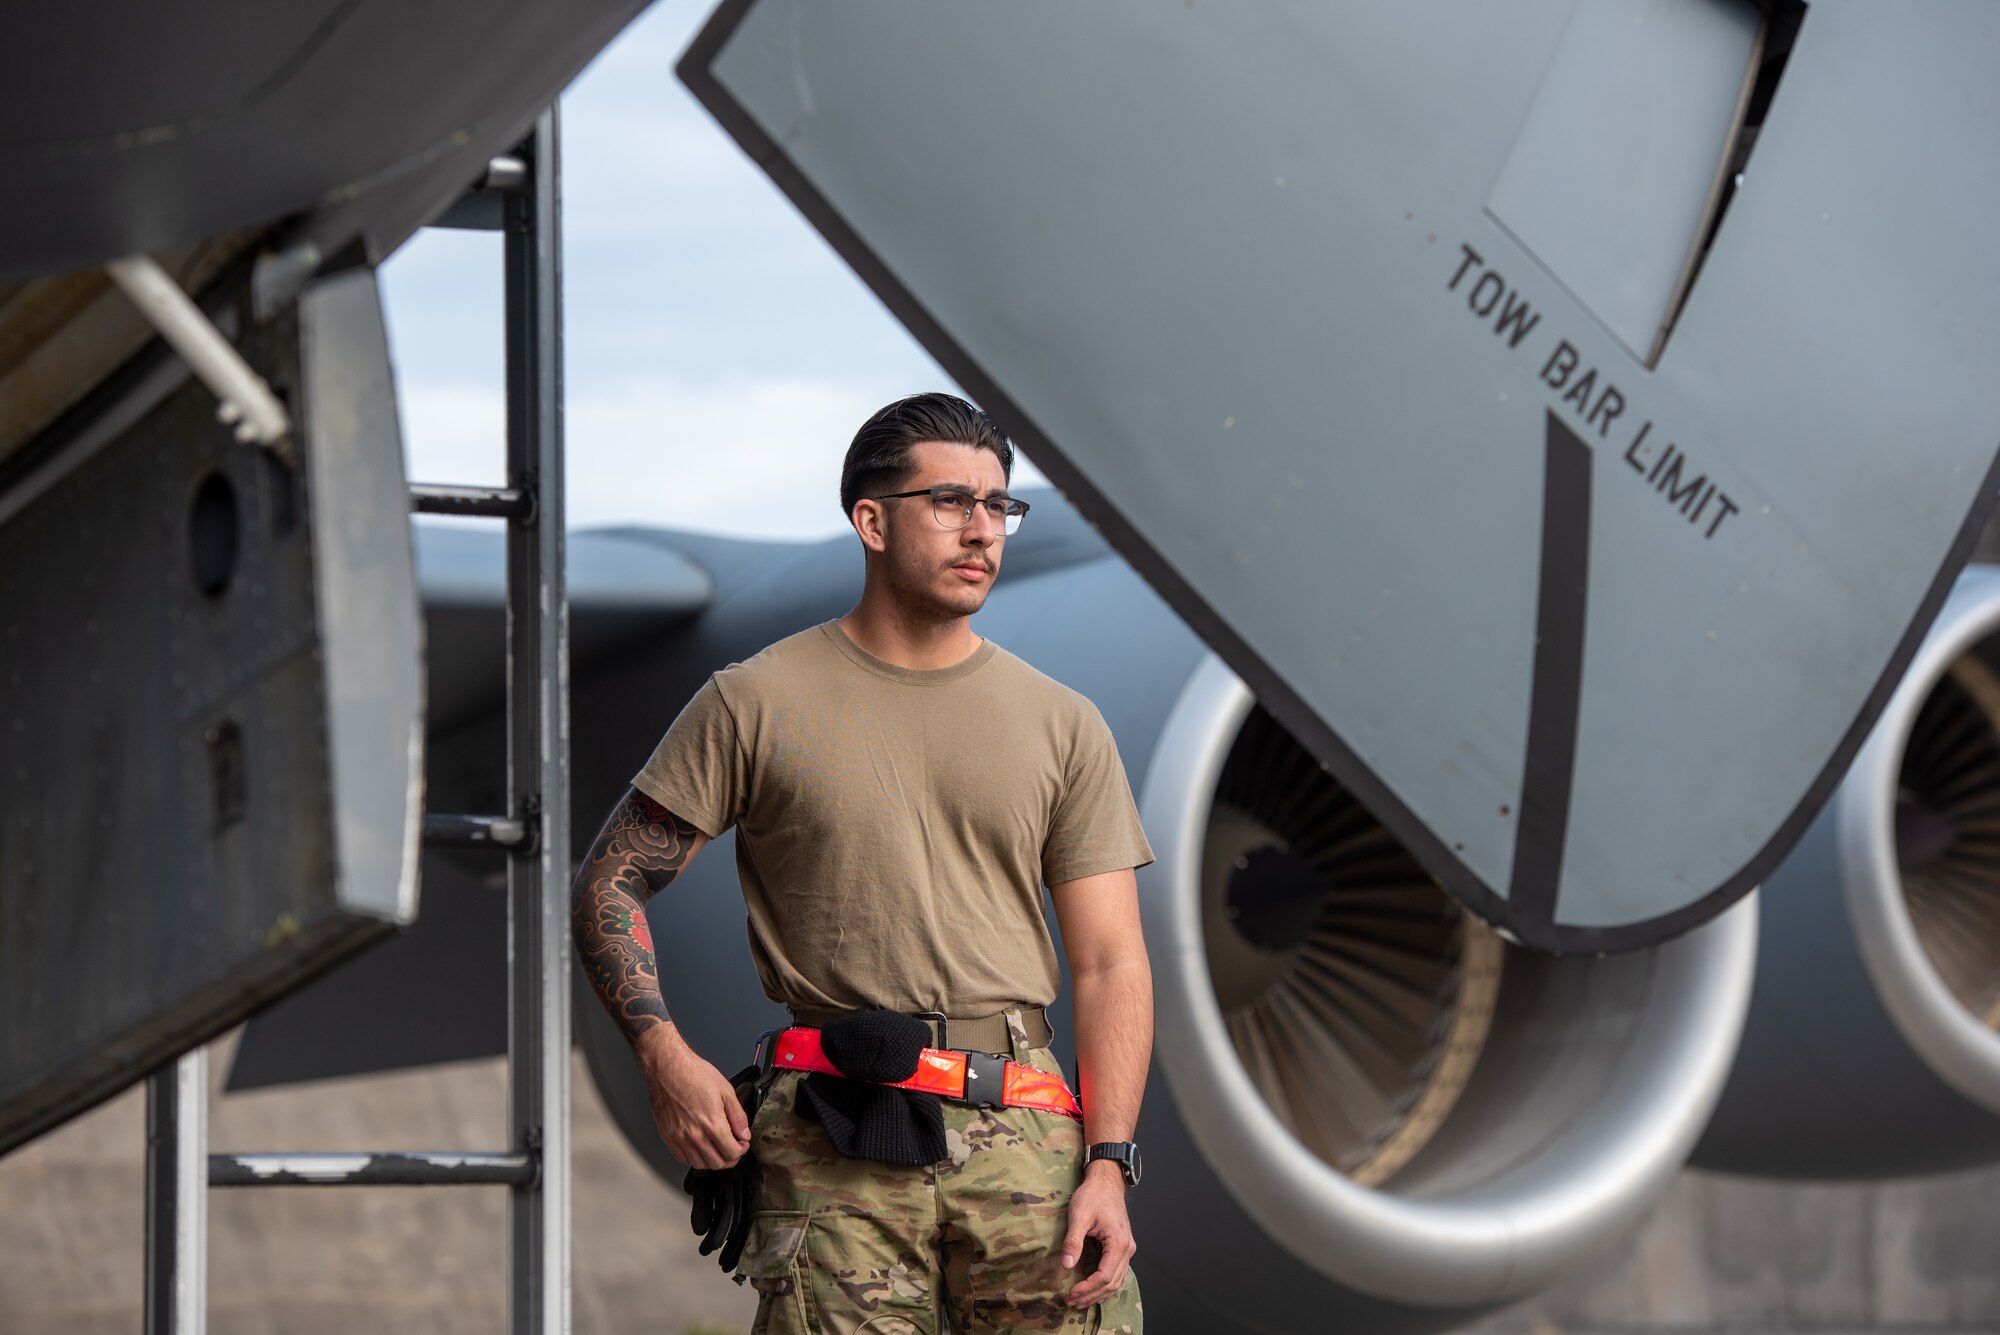 Airman stands next to an aircraft